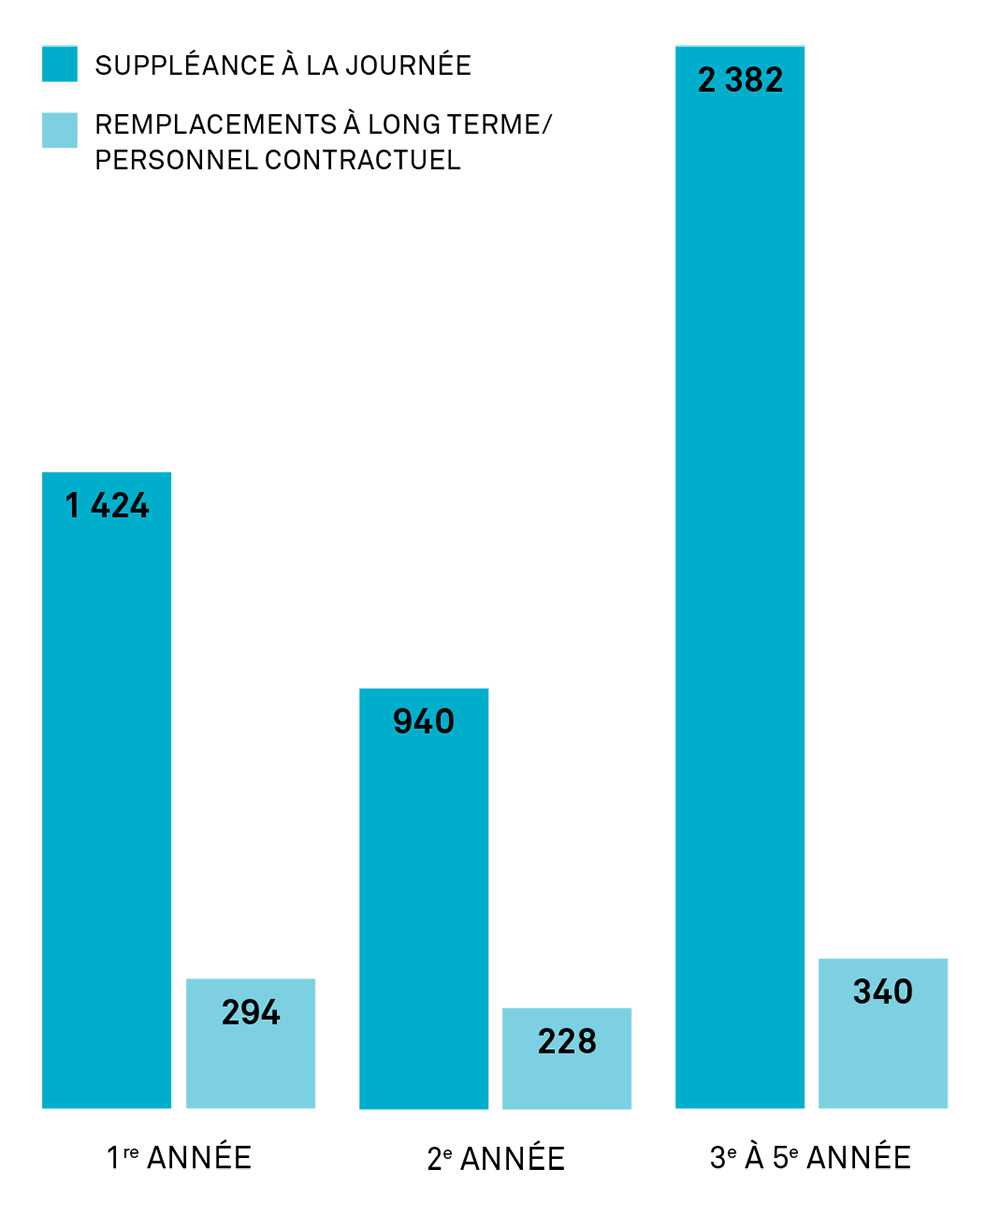 Des graphiques à barres montrent le nombre d’enseignants qui sont suppléants à la journée et remplaçants à long terme/membre du personnel contractuel selon l’année de carrière.